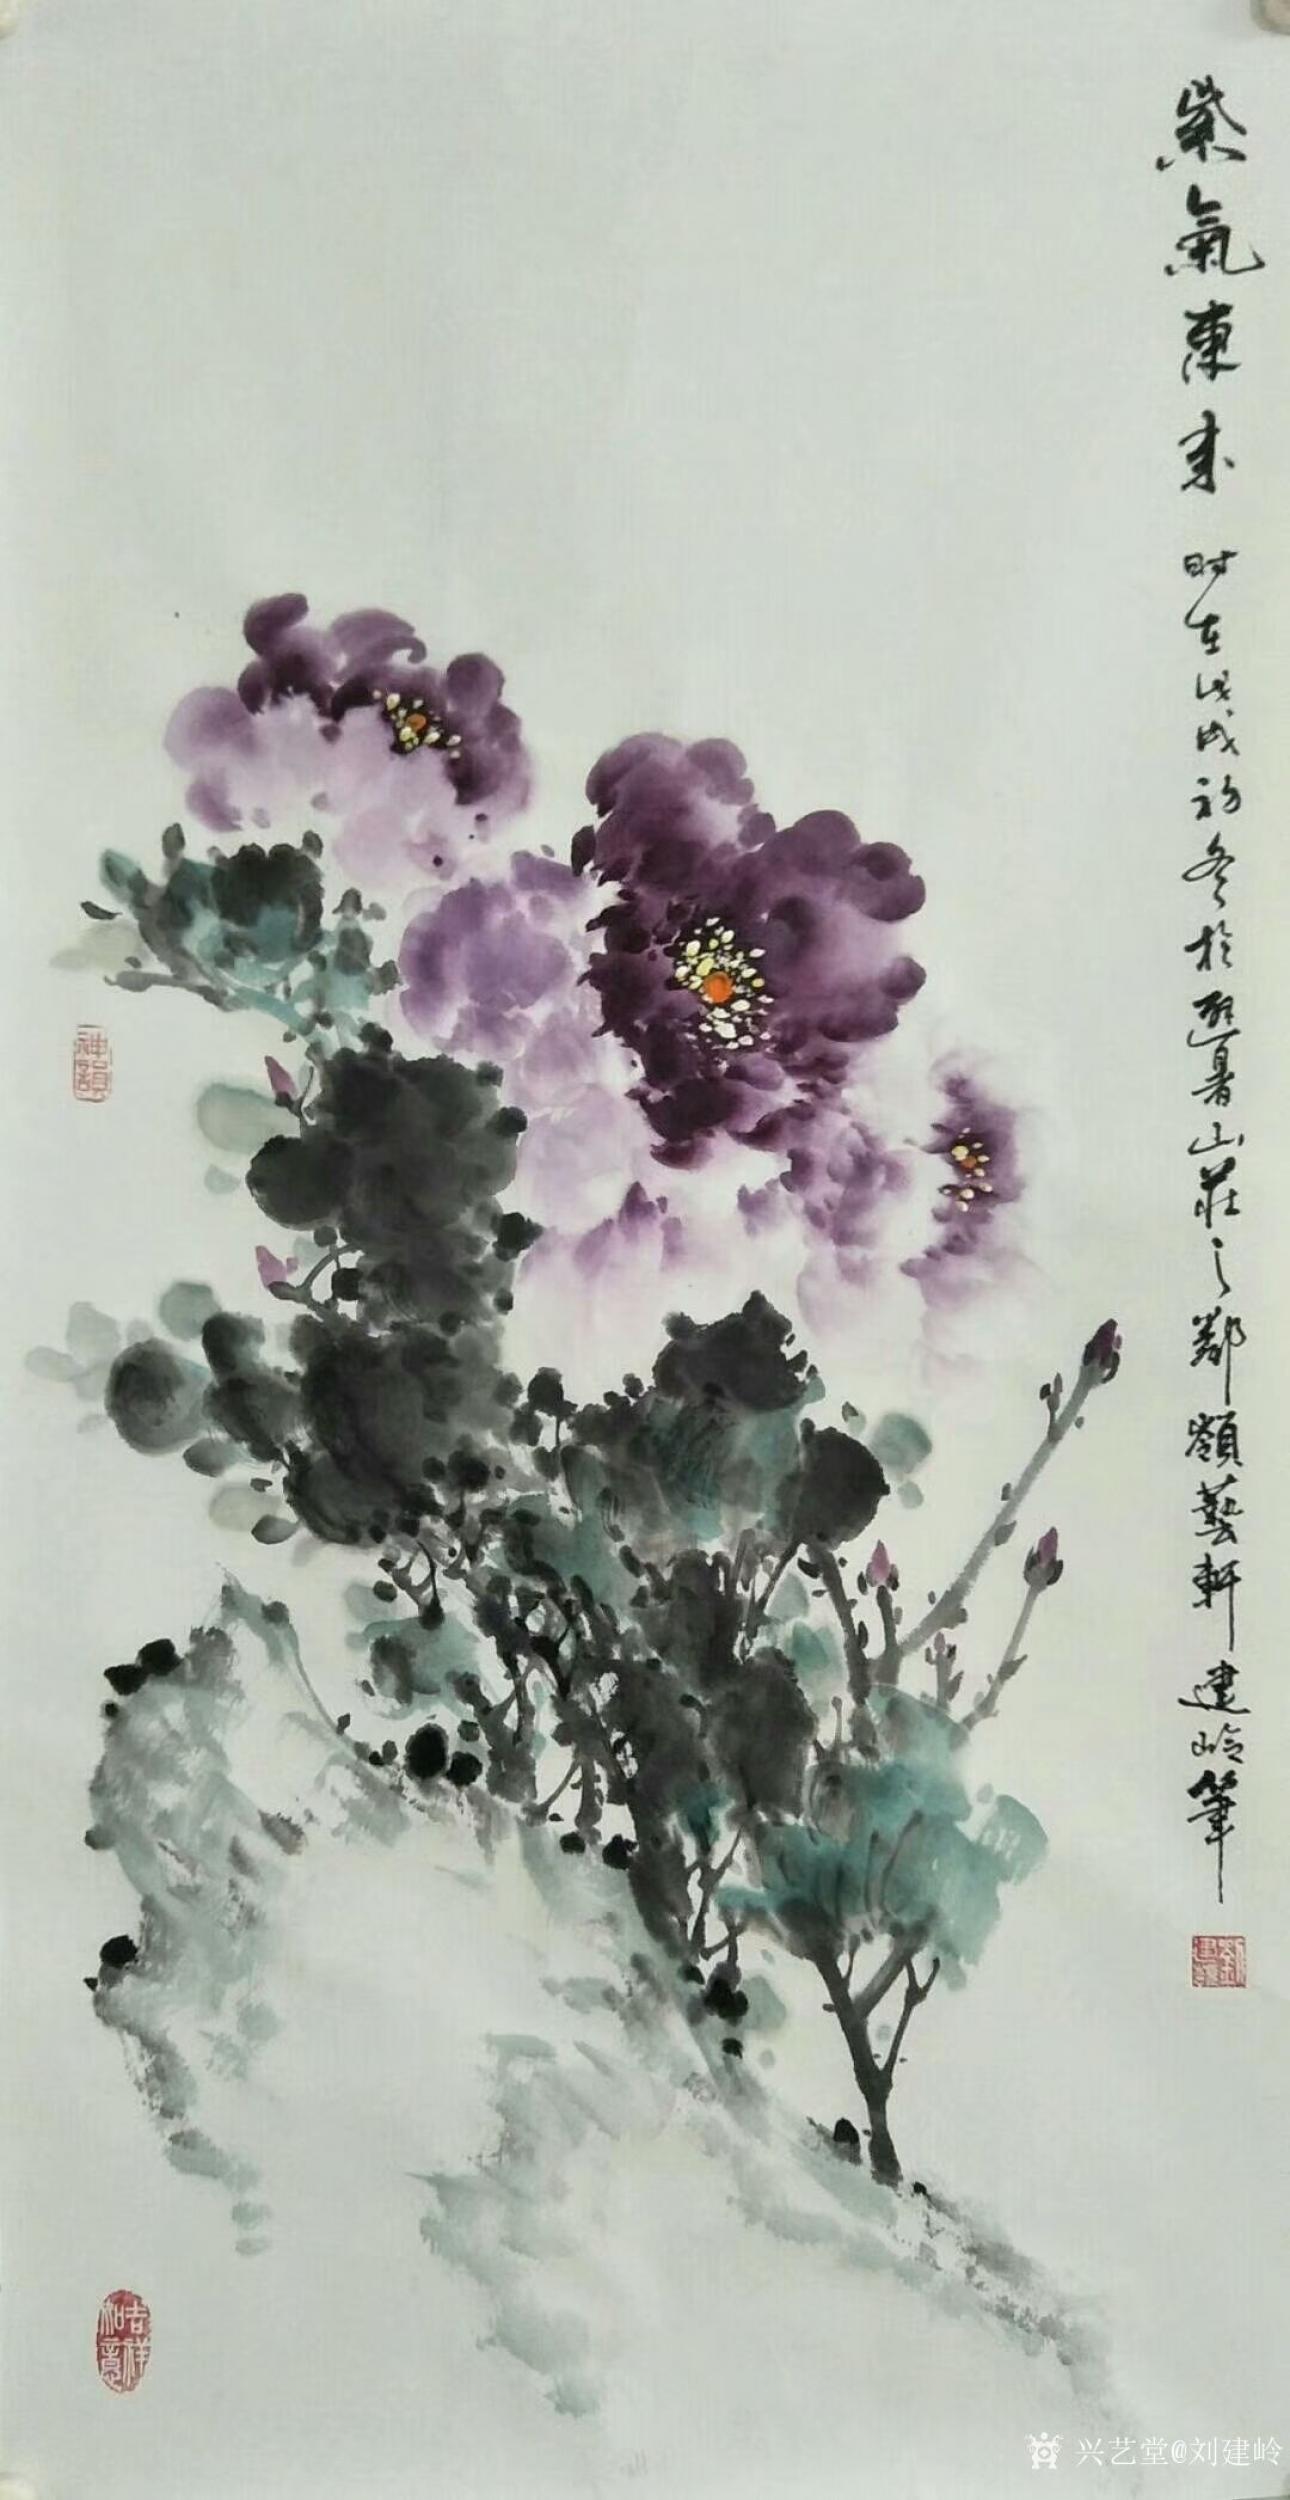 刘建岭日志-花鸟画国画牡丹系列作品《美丽双滦》《紫气东来》,尺寸三